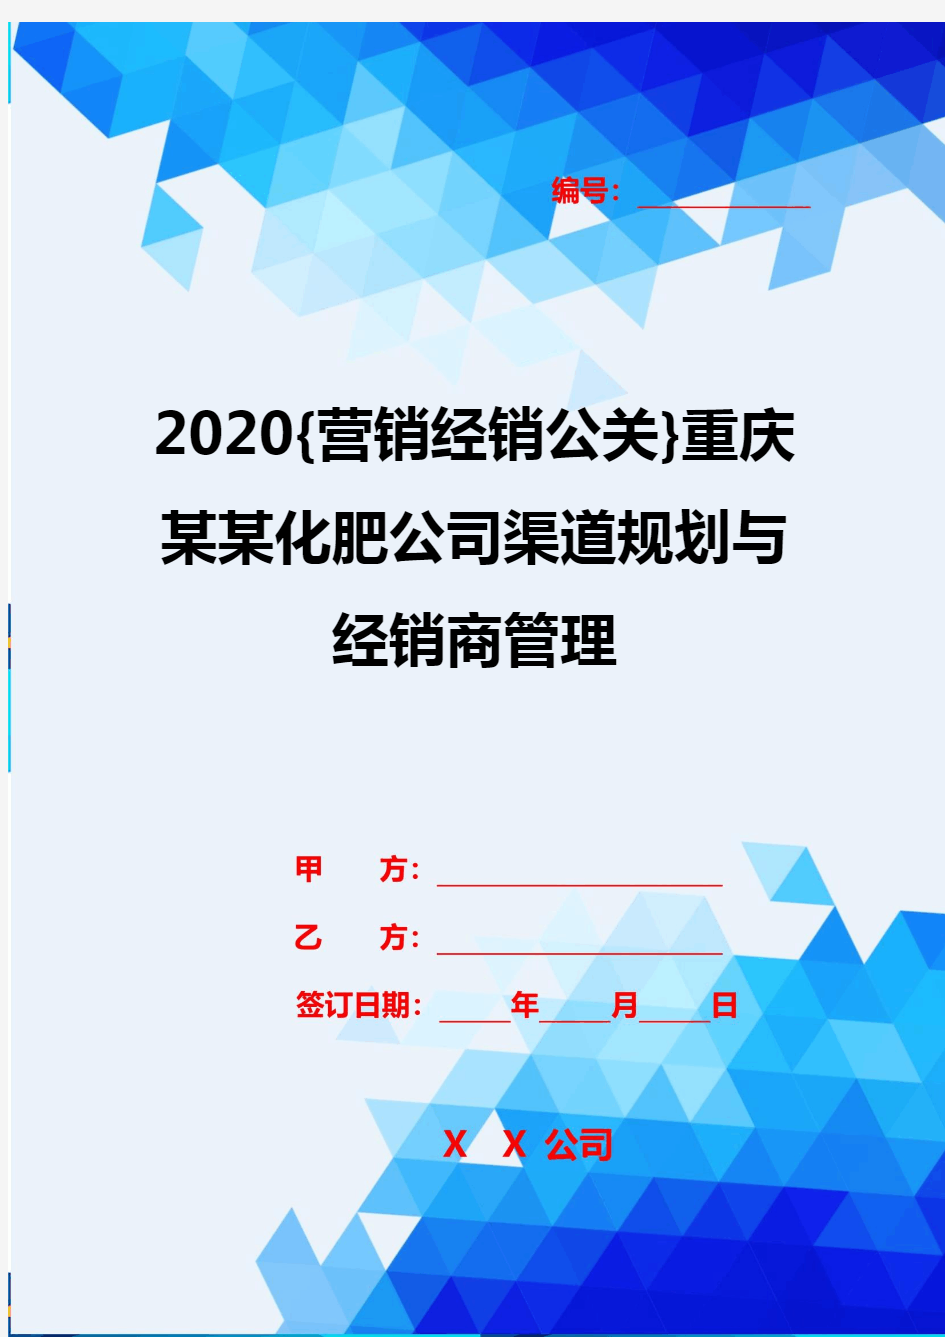 2020{营销经销公关}重庆某某化肥公司渠道规划与经销商管理